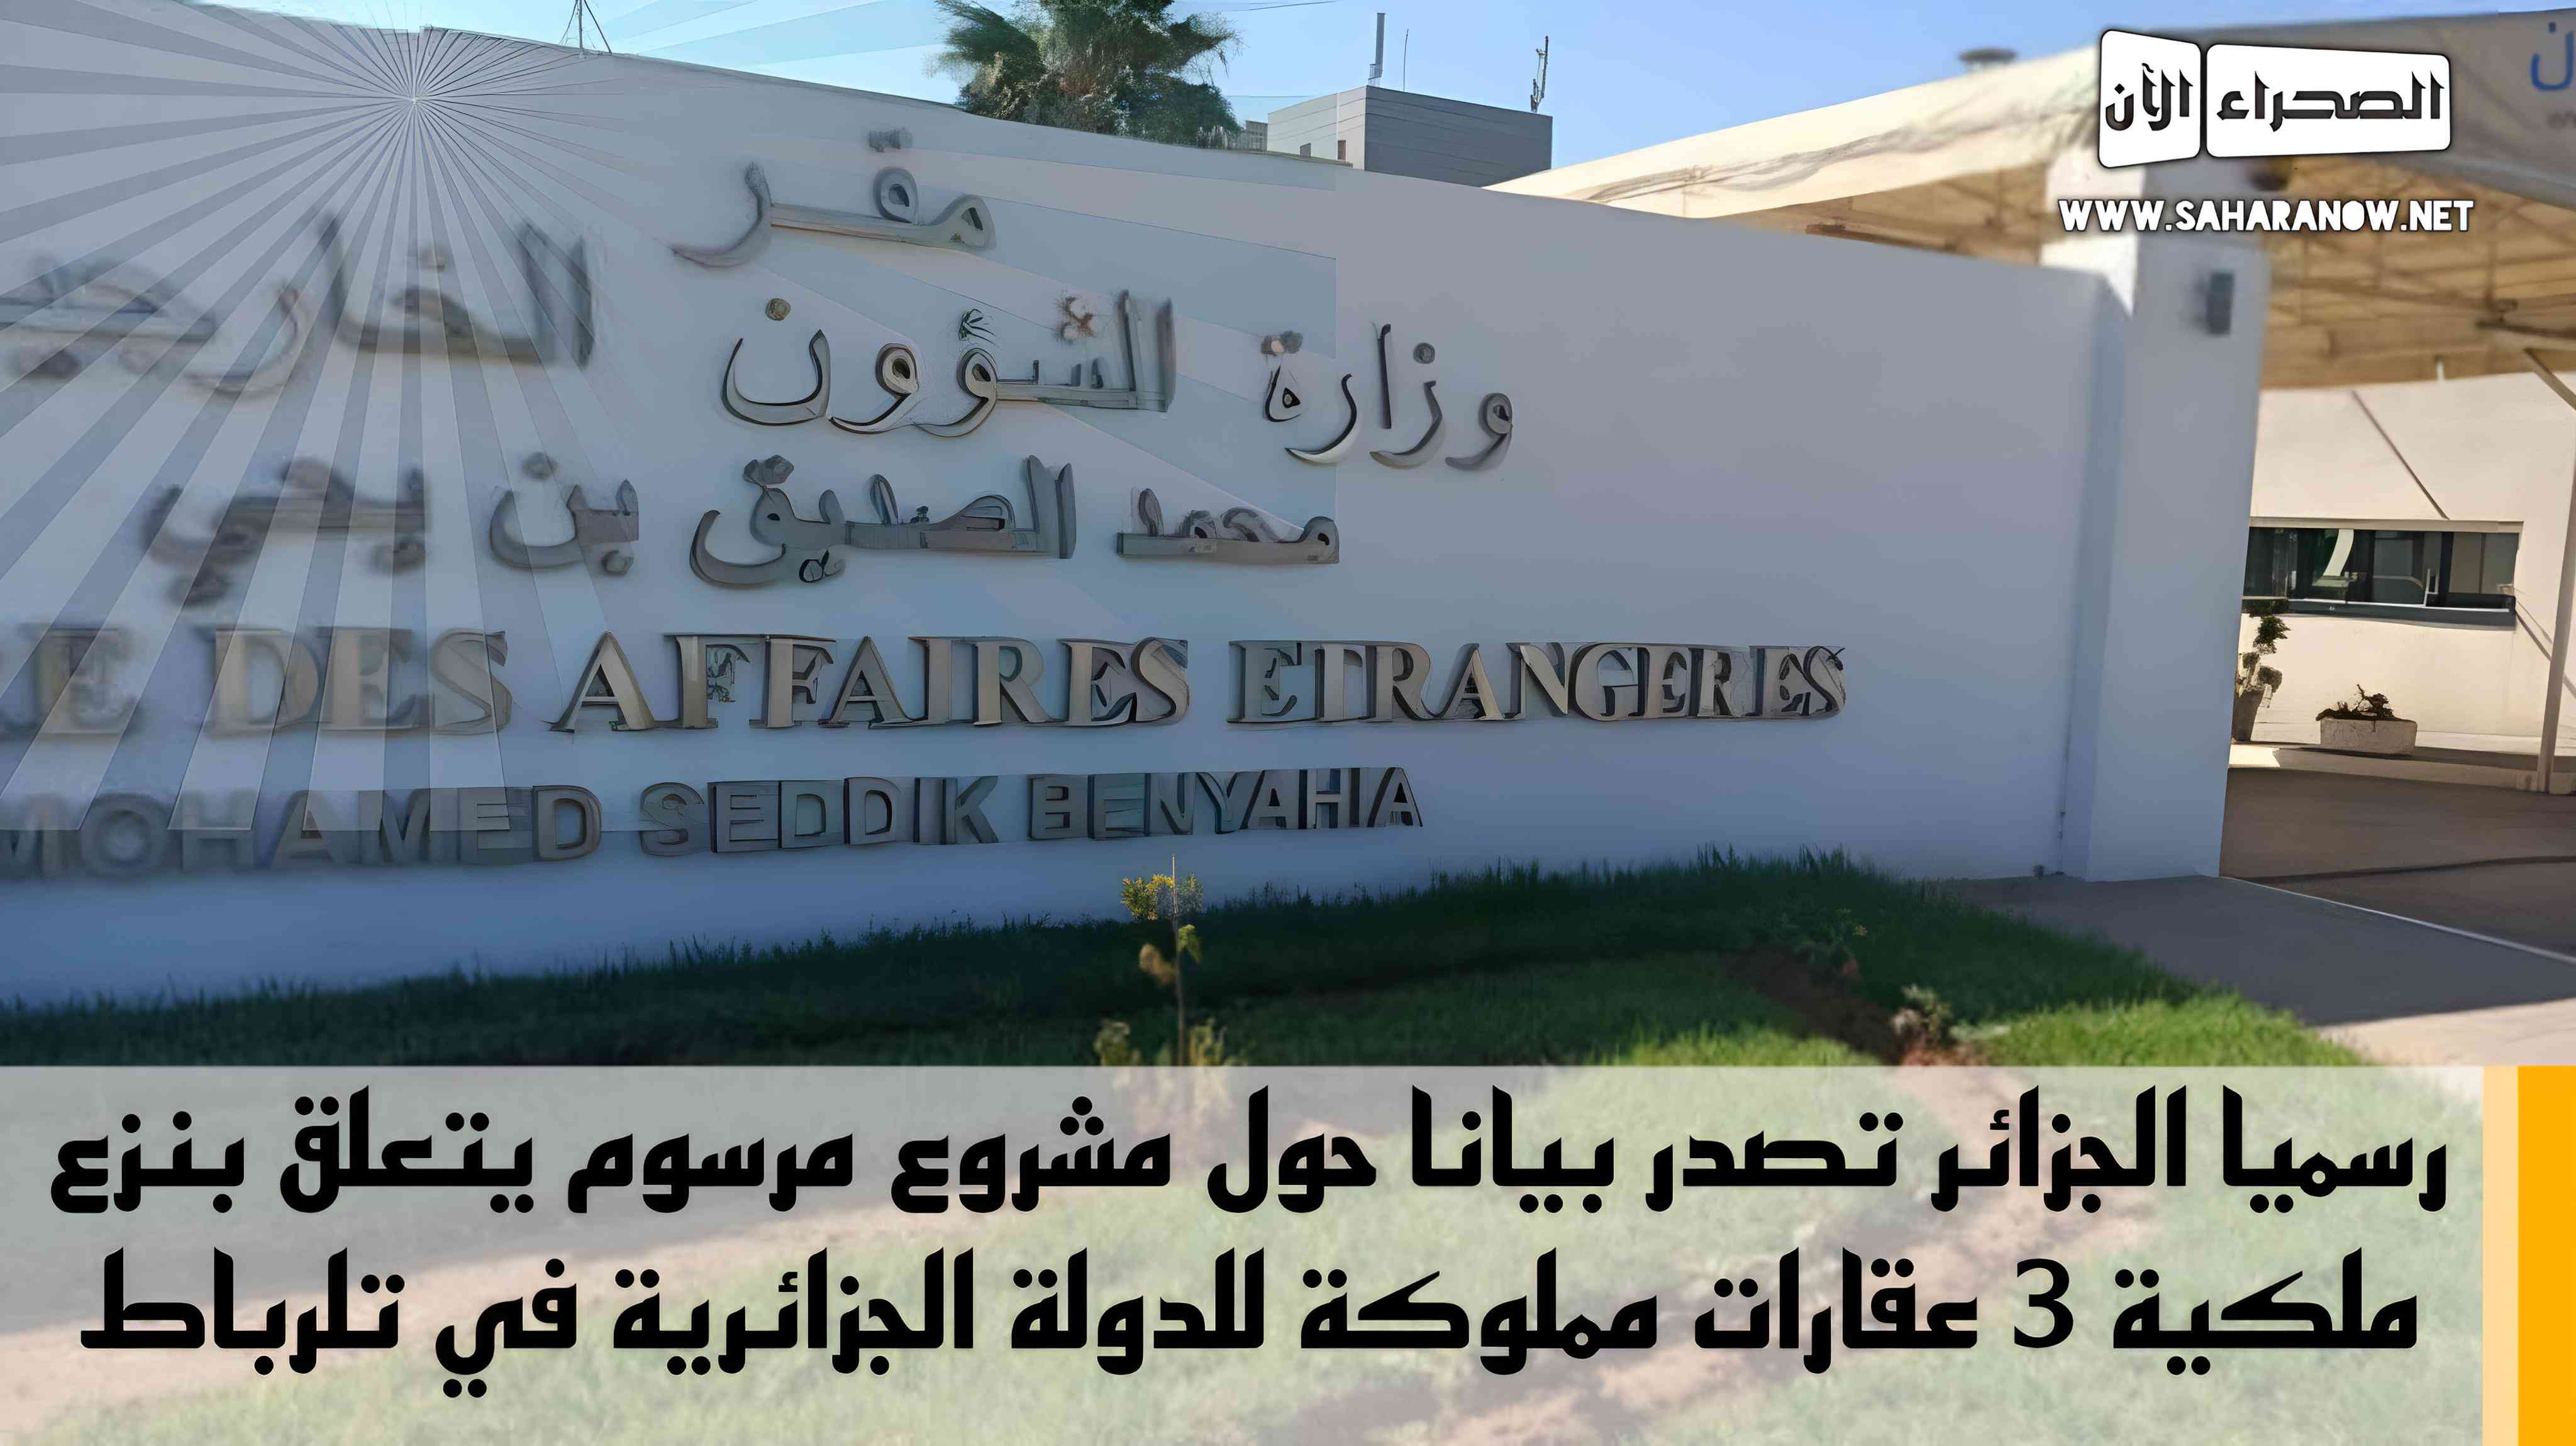 رسميا الجزائر تصدر بيانا حول مشروع مرسوم يتعلق بنزع ملكية 3 عقارات مملوكة للدولة الجزائرية في الرباط